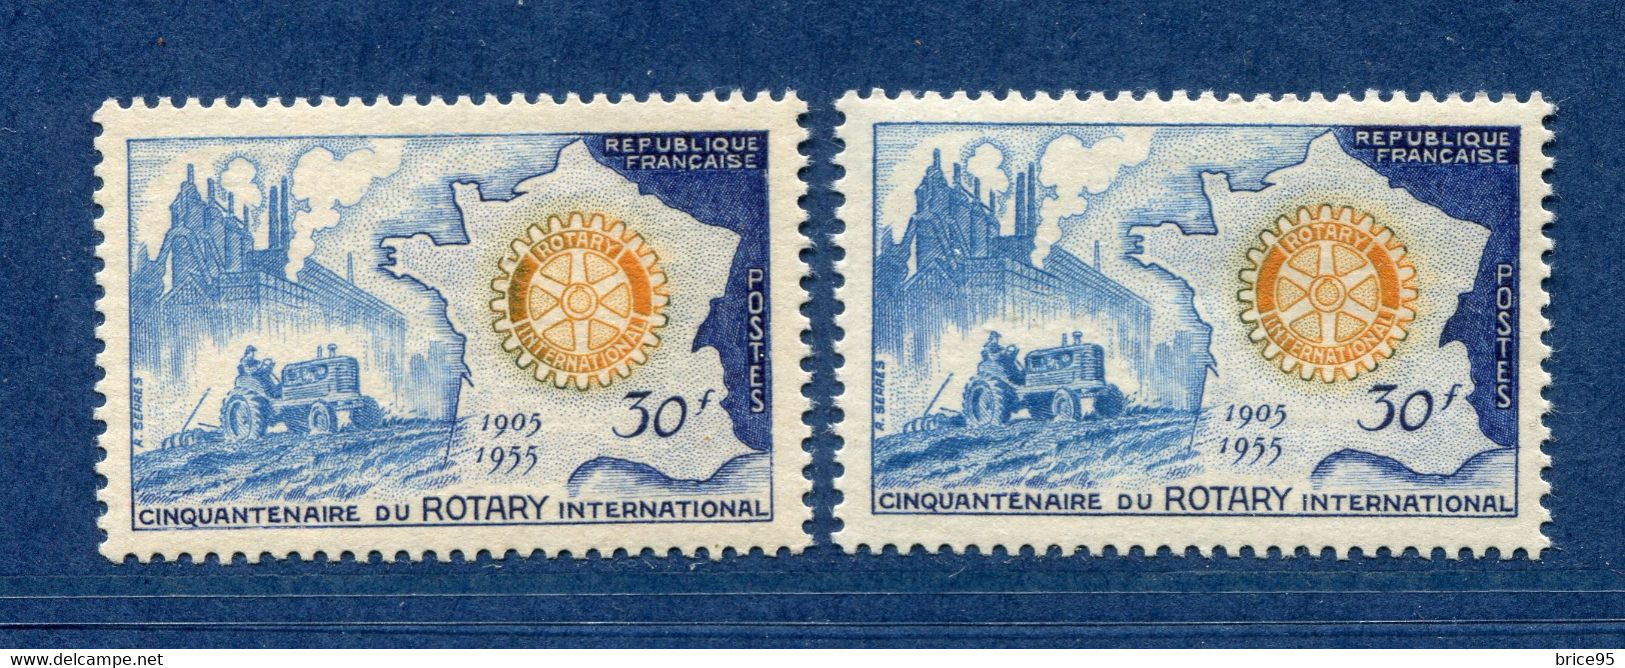 ⭐ France - Variété - YT N° 1009 - Couleurs - Pétouille - Neuf Sans Charnière - 1955 ⭐ - Unused Stamps